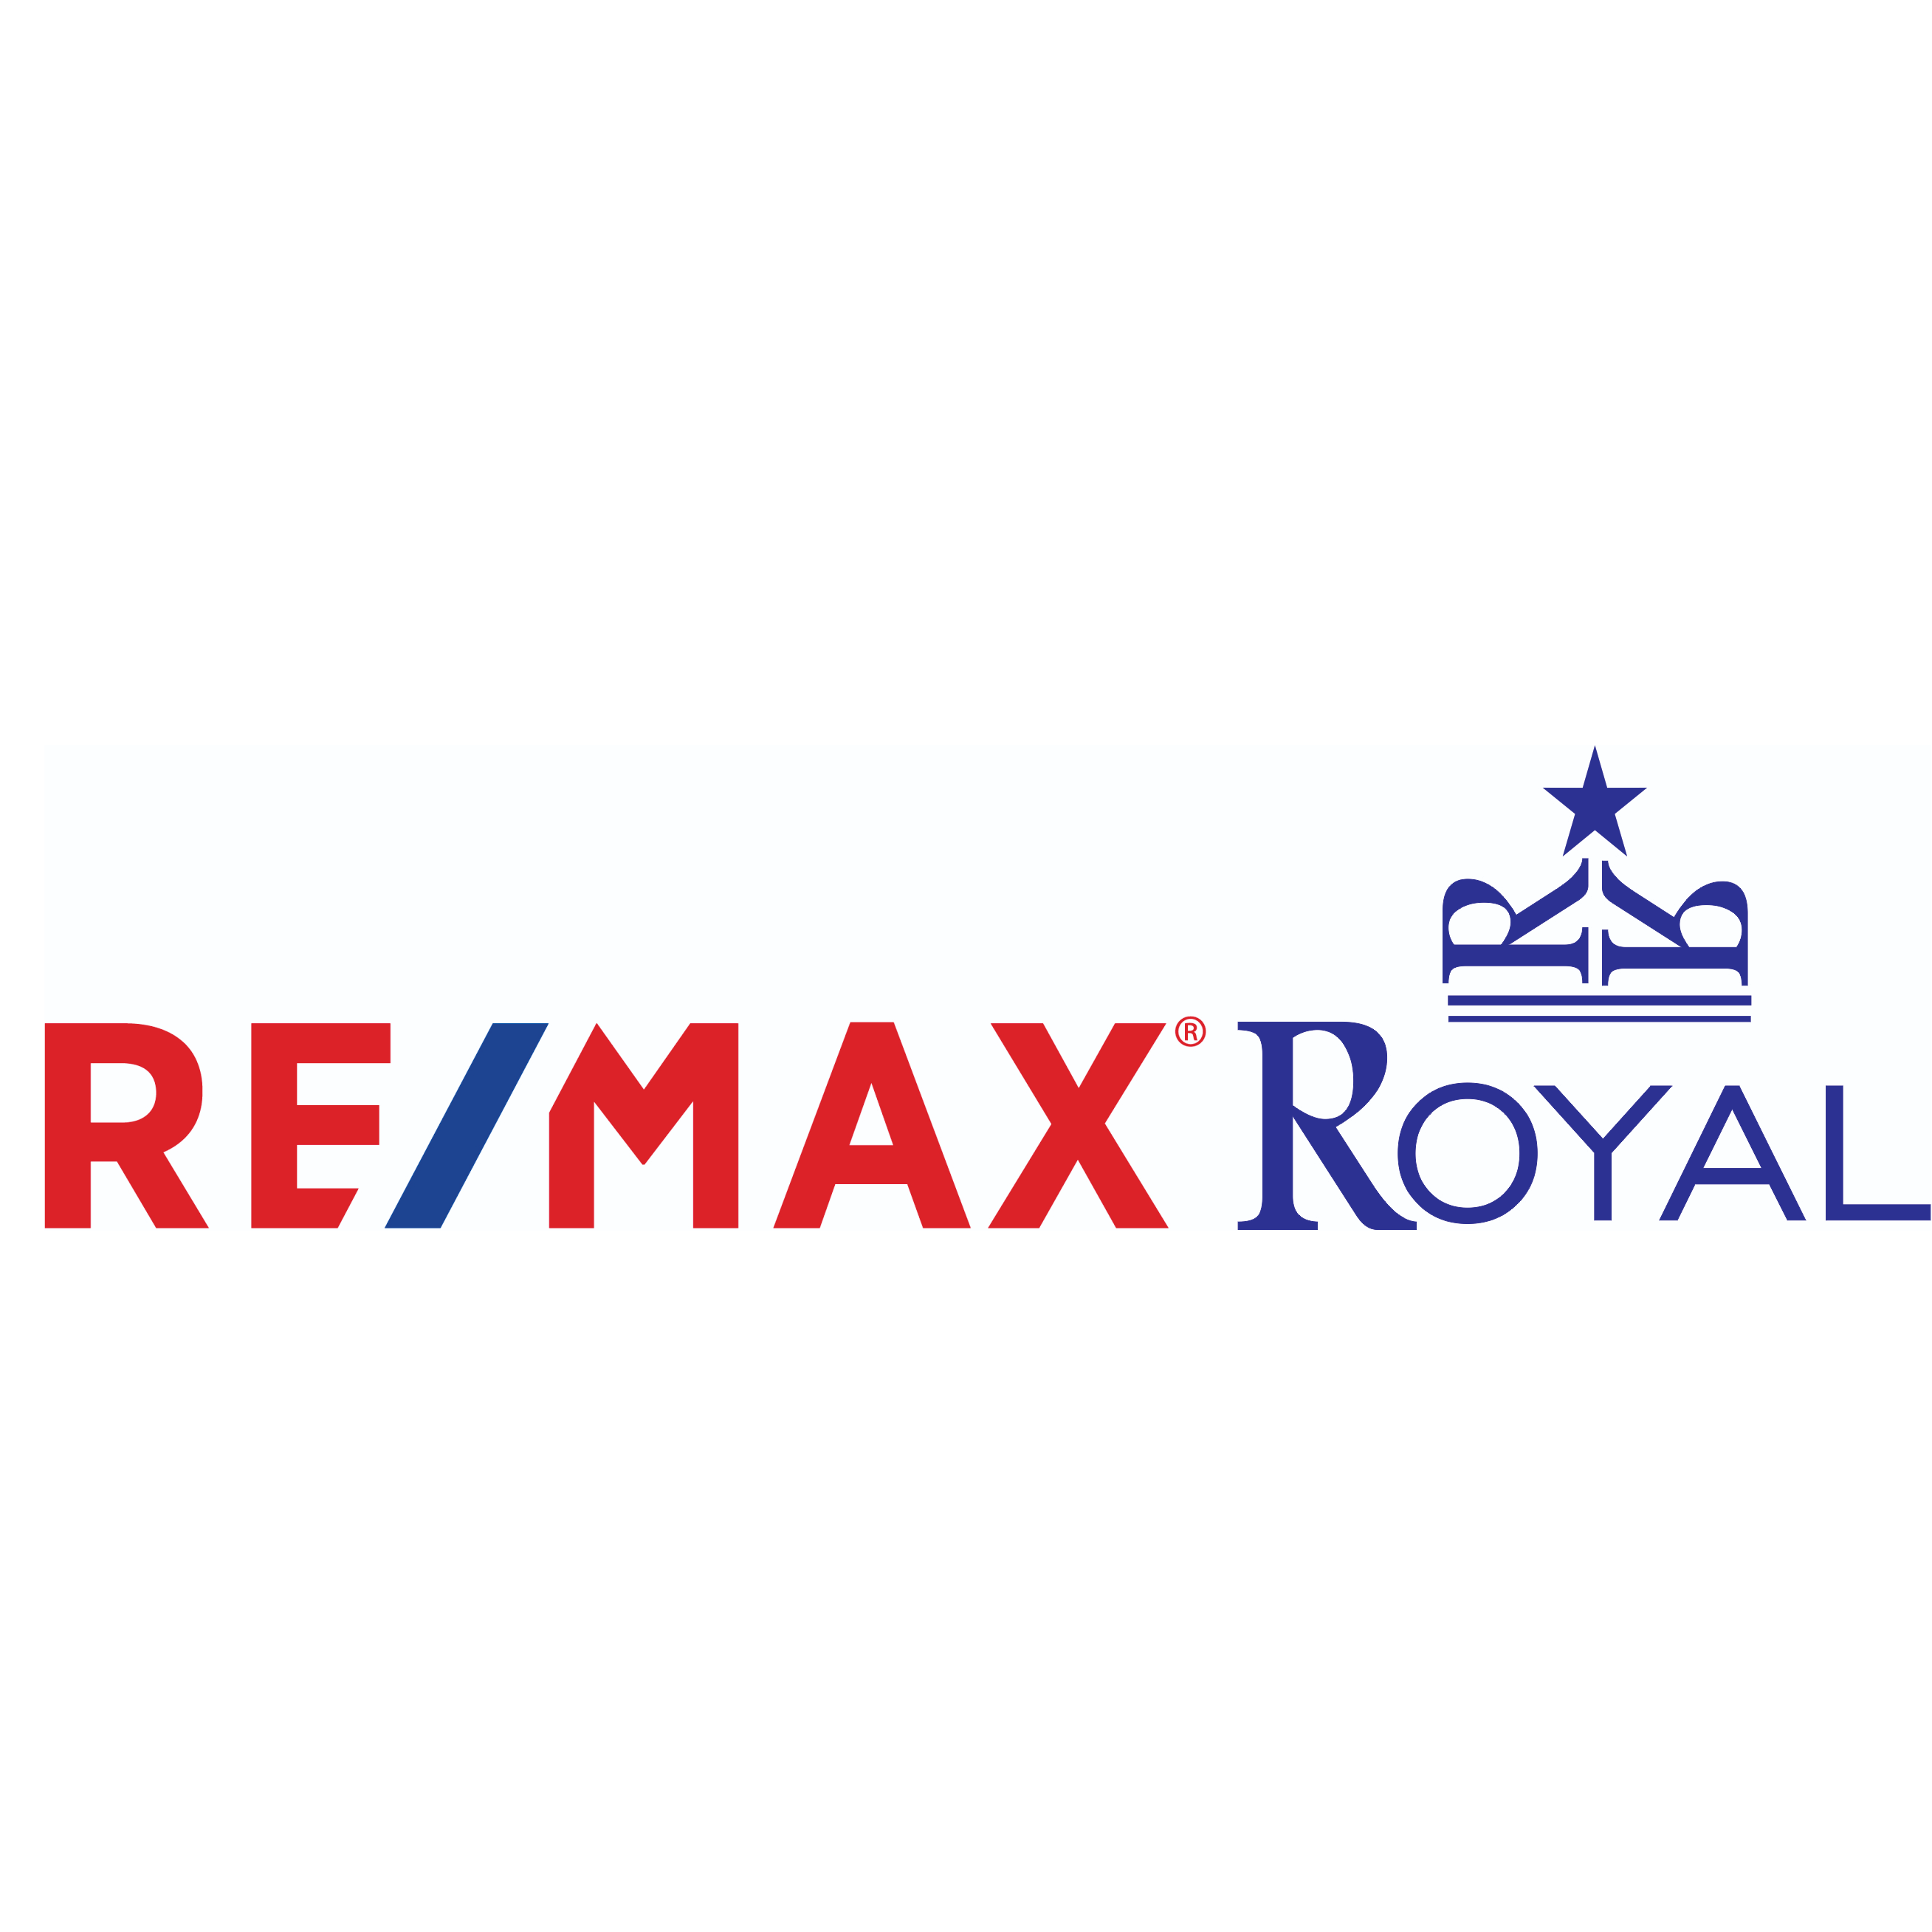 RE/MAX Royal